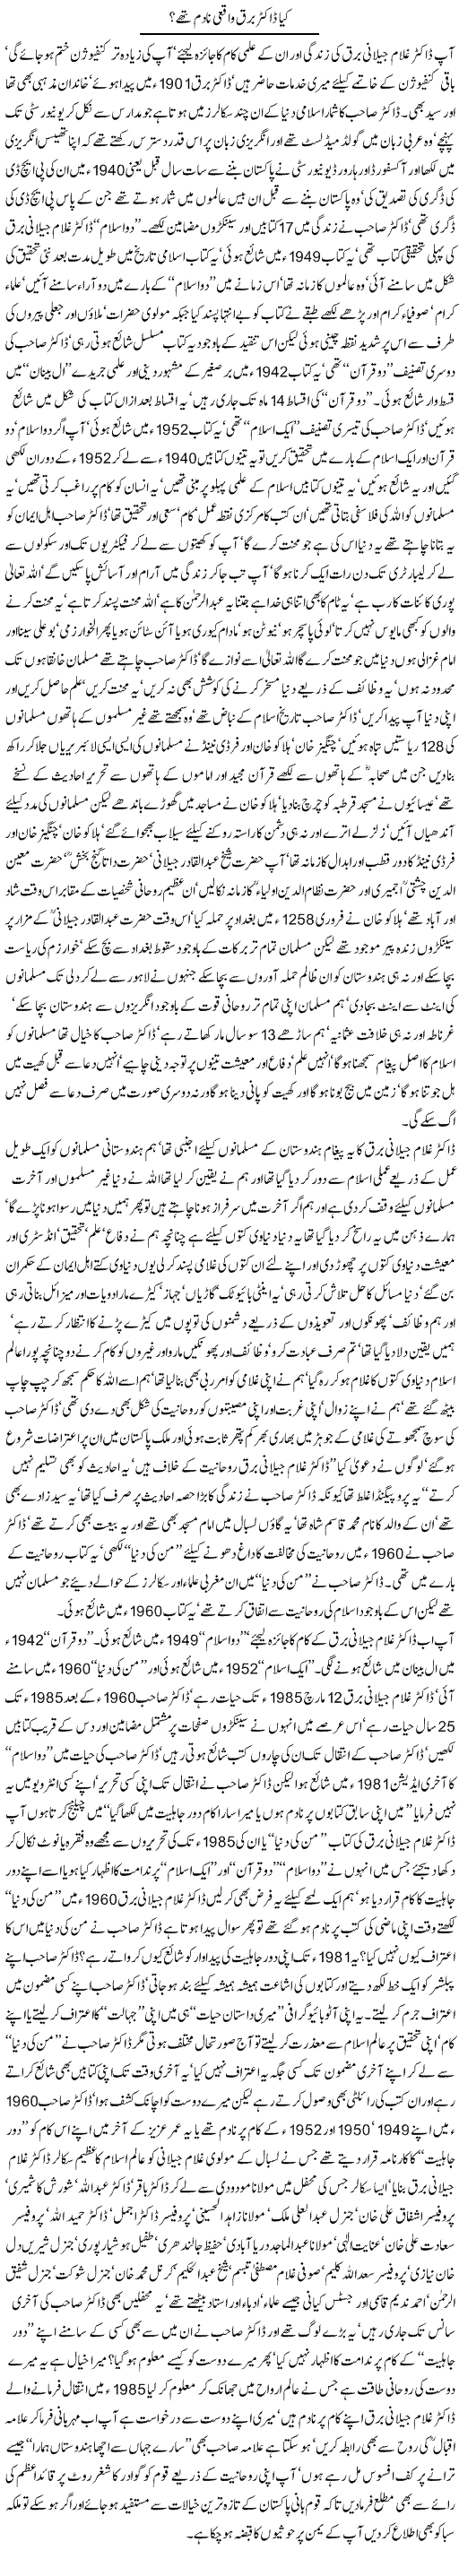 Kia Doctor Barq Waqae Nadam thay by Javed Chaudhry